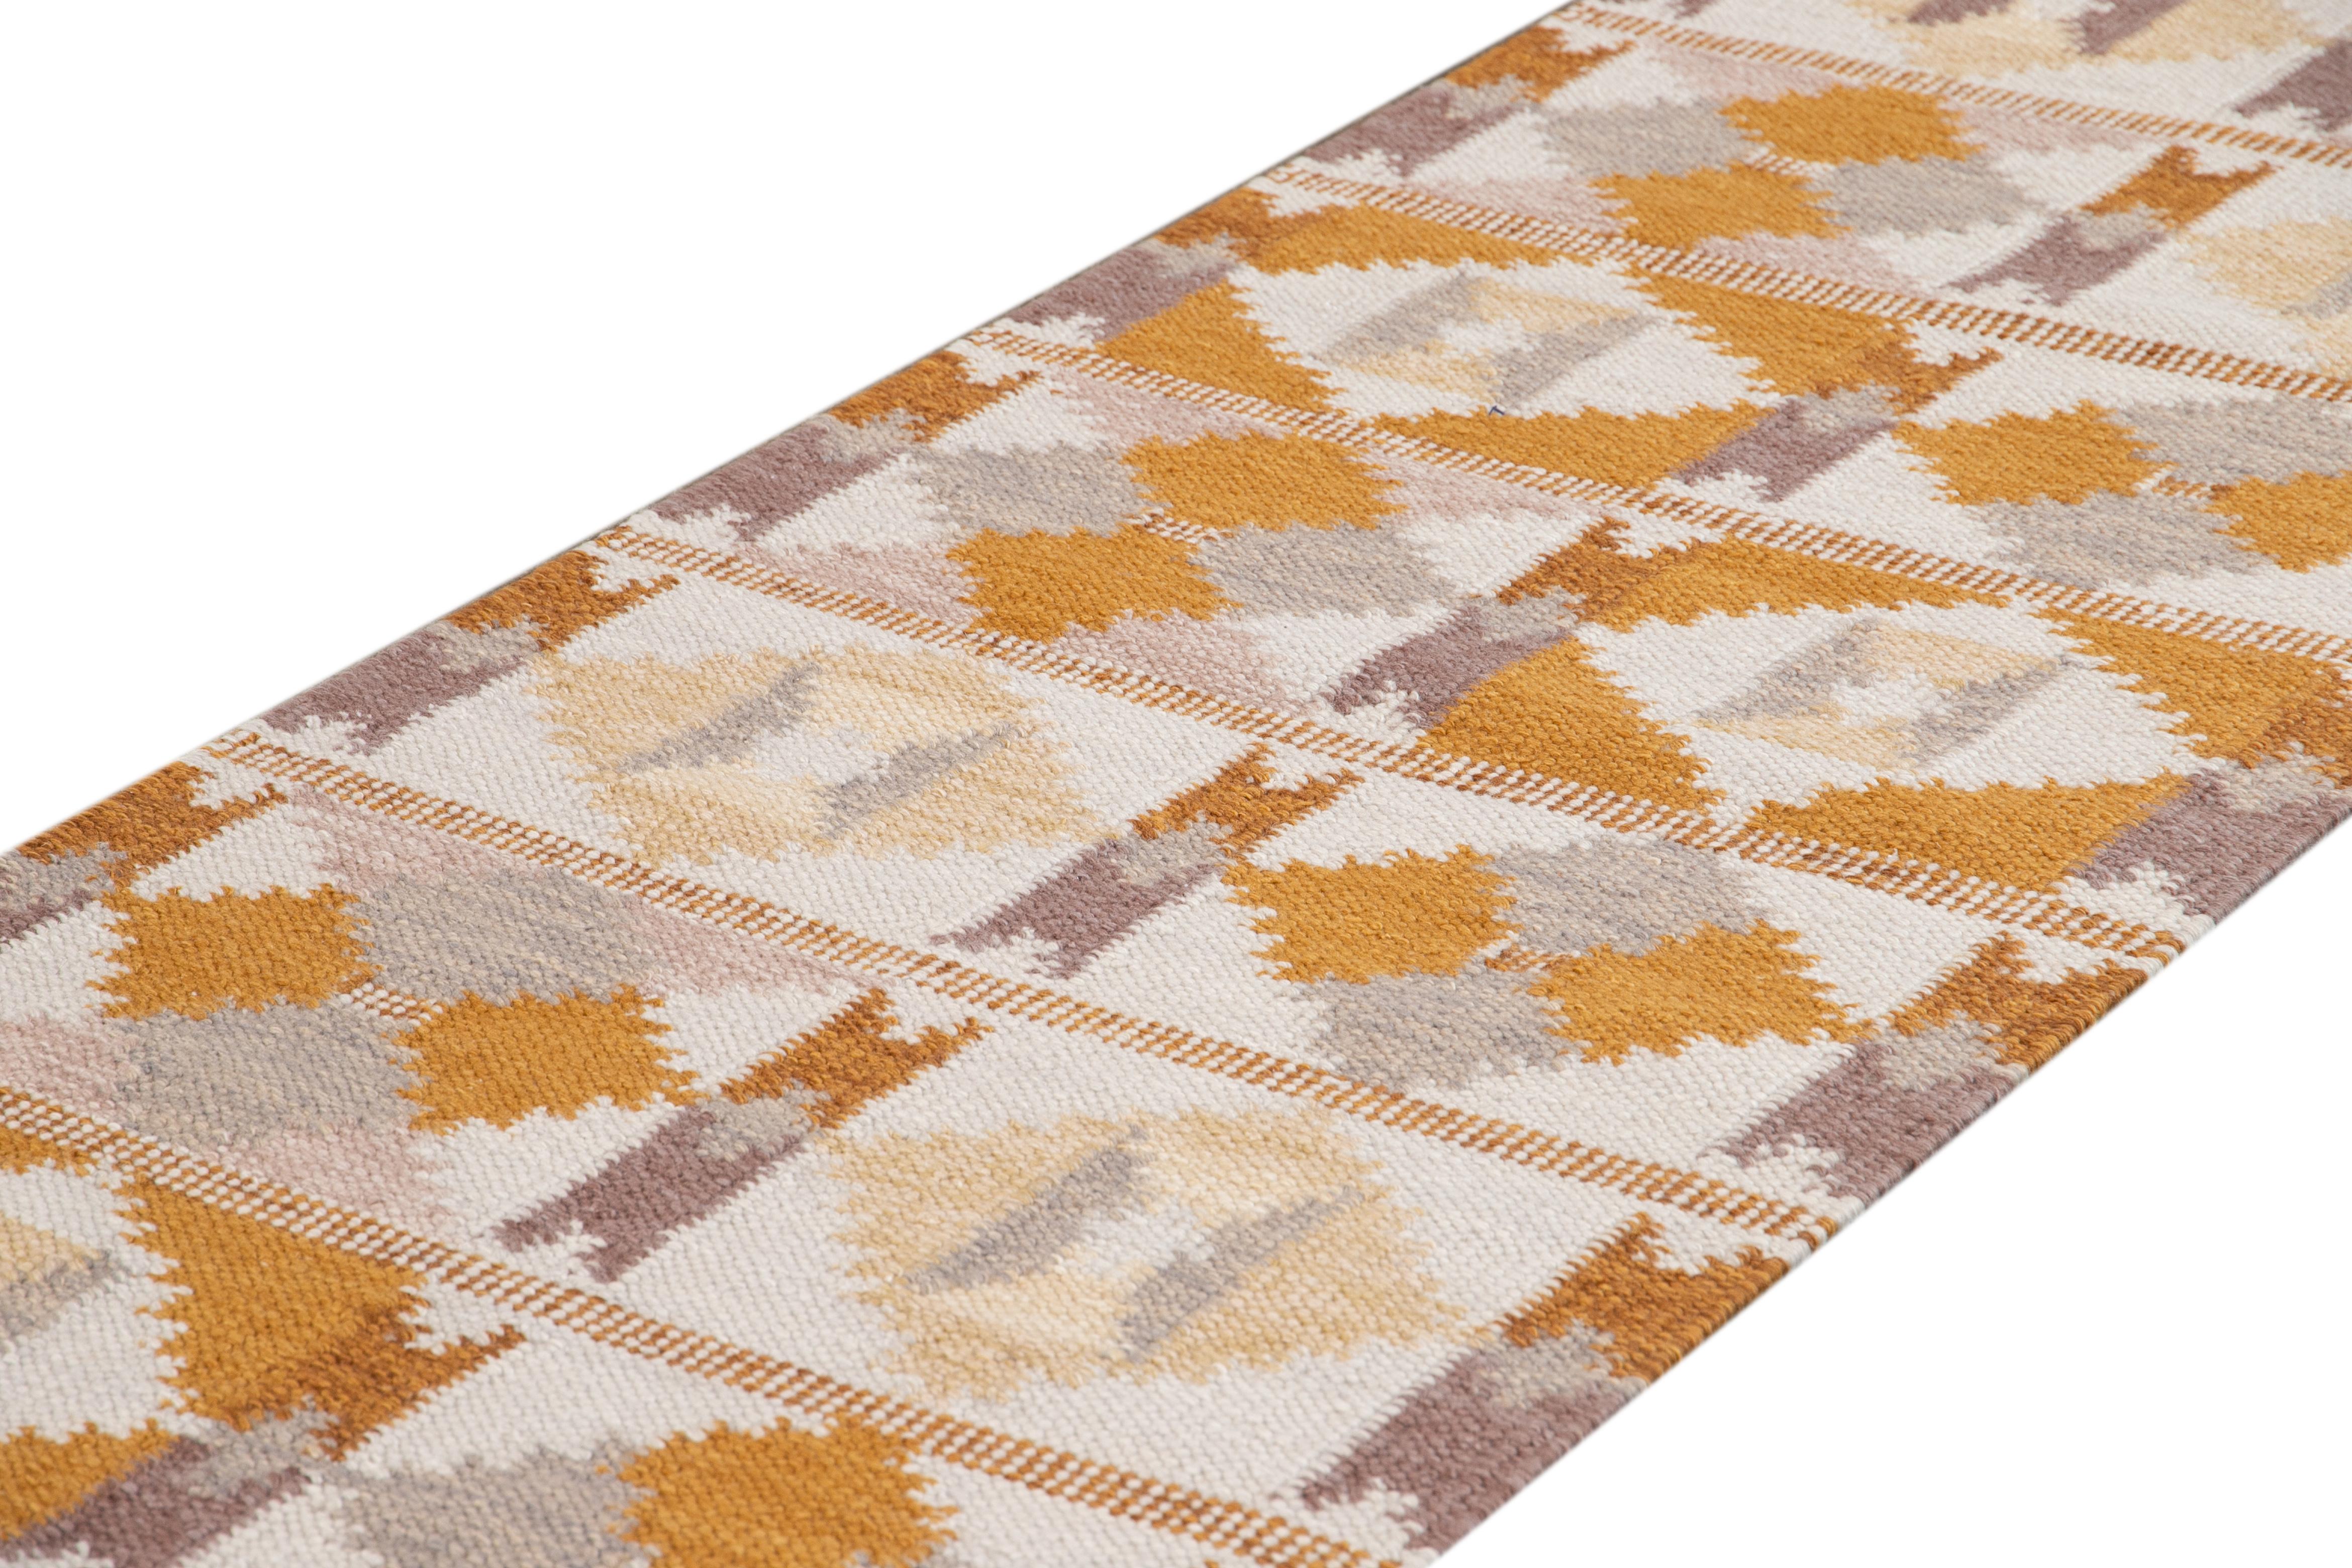 Schöner zeitgenössischer Läufer im schwedischen Stil, handgeknüpft aus Wolle mit elfenbeinfarbenem Feld, senfgelben und braunen Akzenten in einem klassischen skandinavischen geometrischen Muster.
Dieser Teppich misst 3' 8